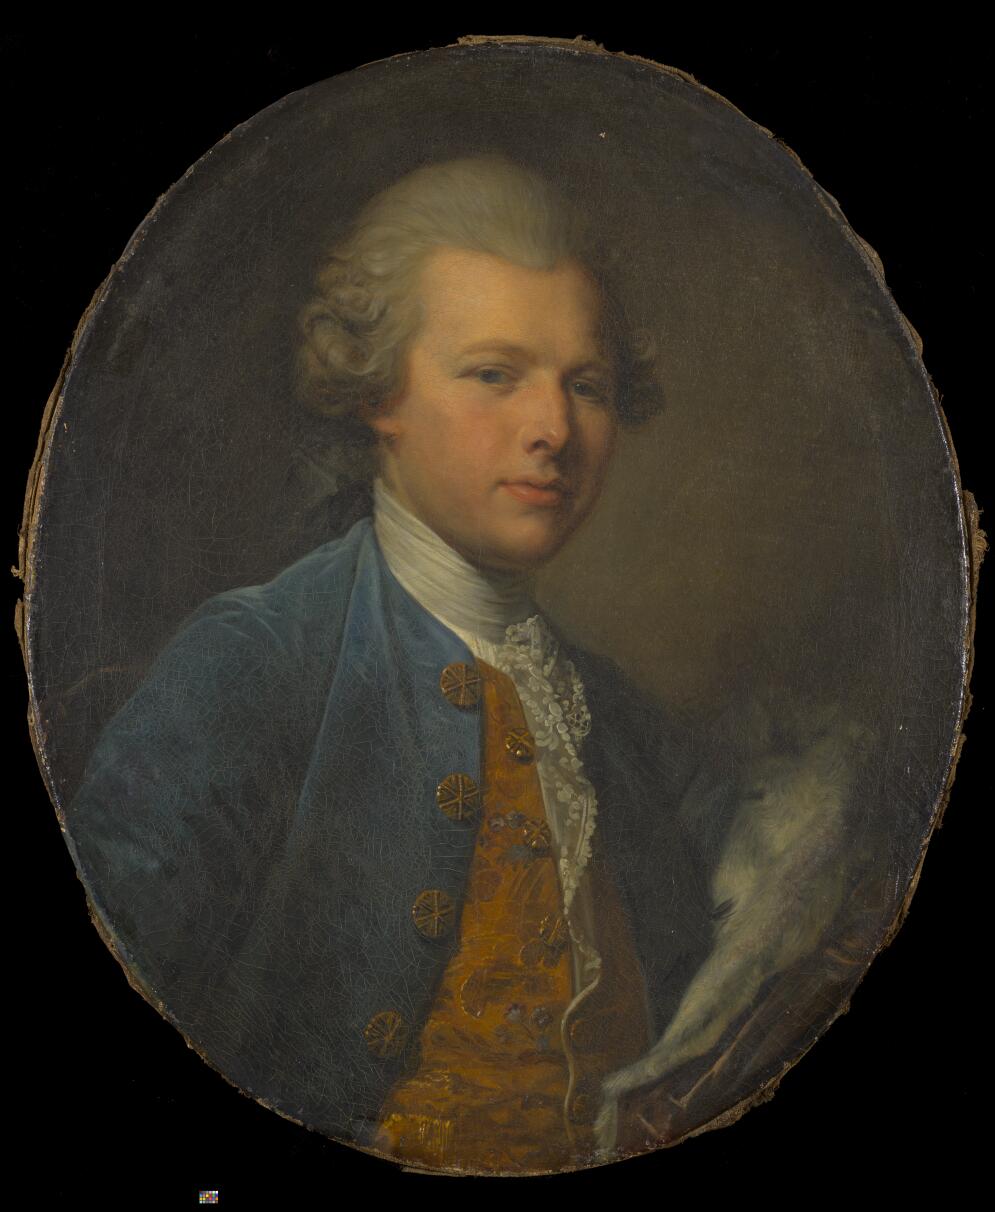 Le Portrait du prince de Saxe-Cobourg-Gotha